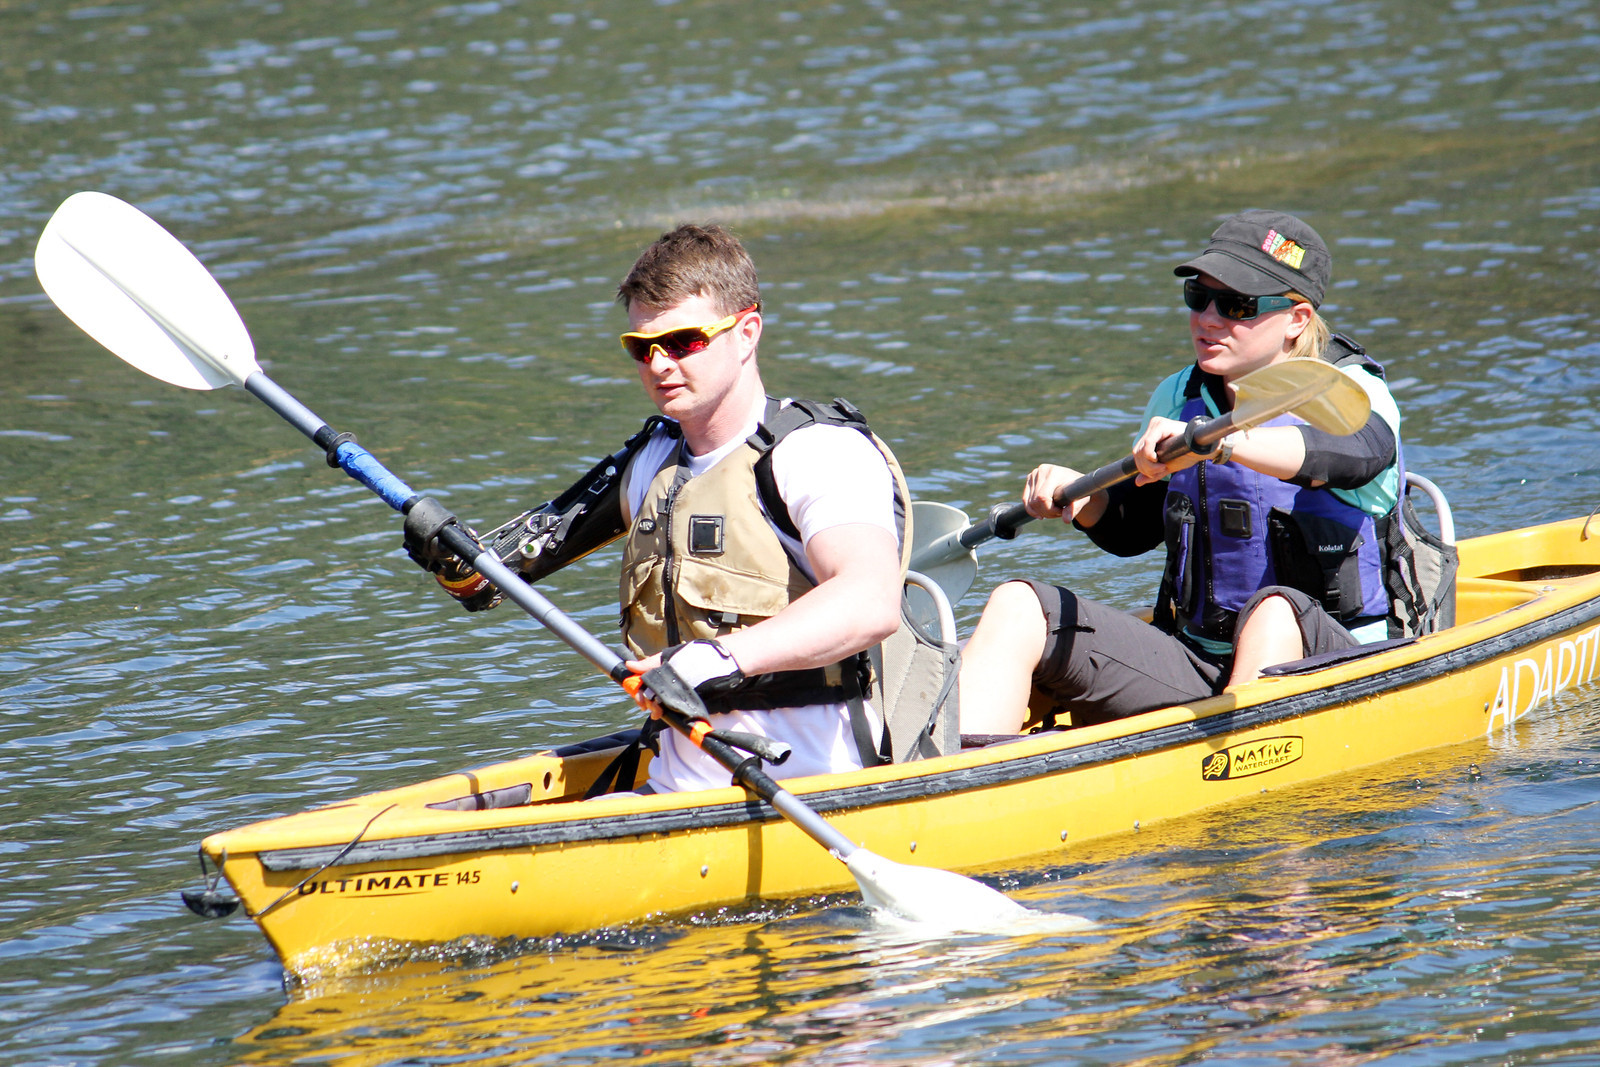 Two athletes kayaking